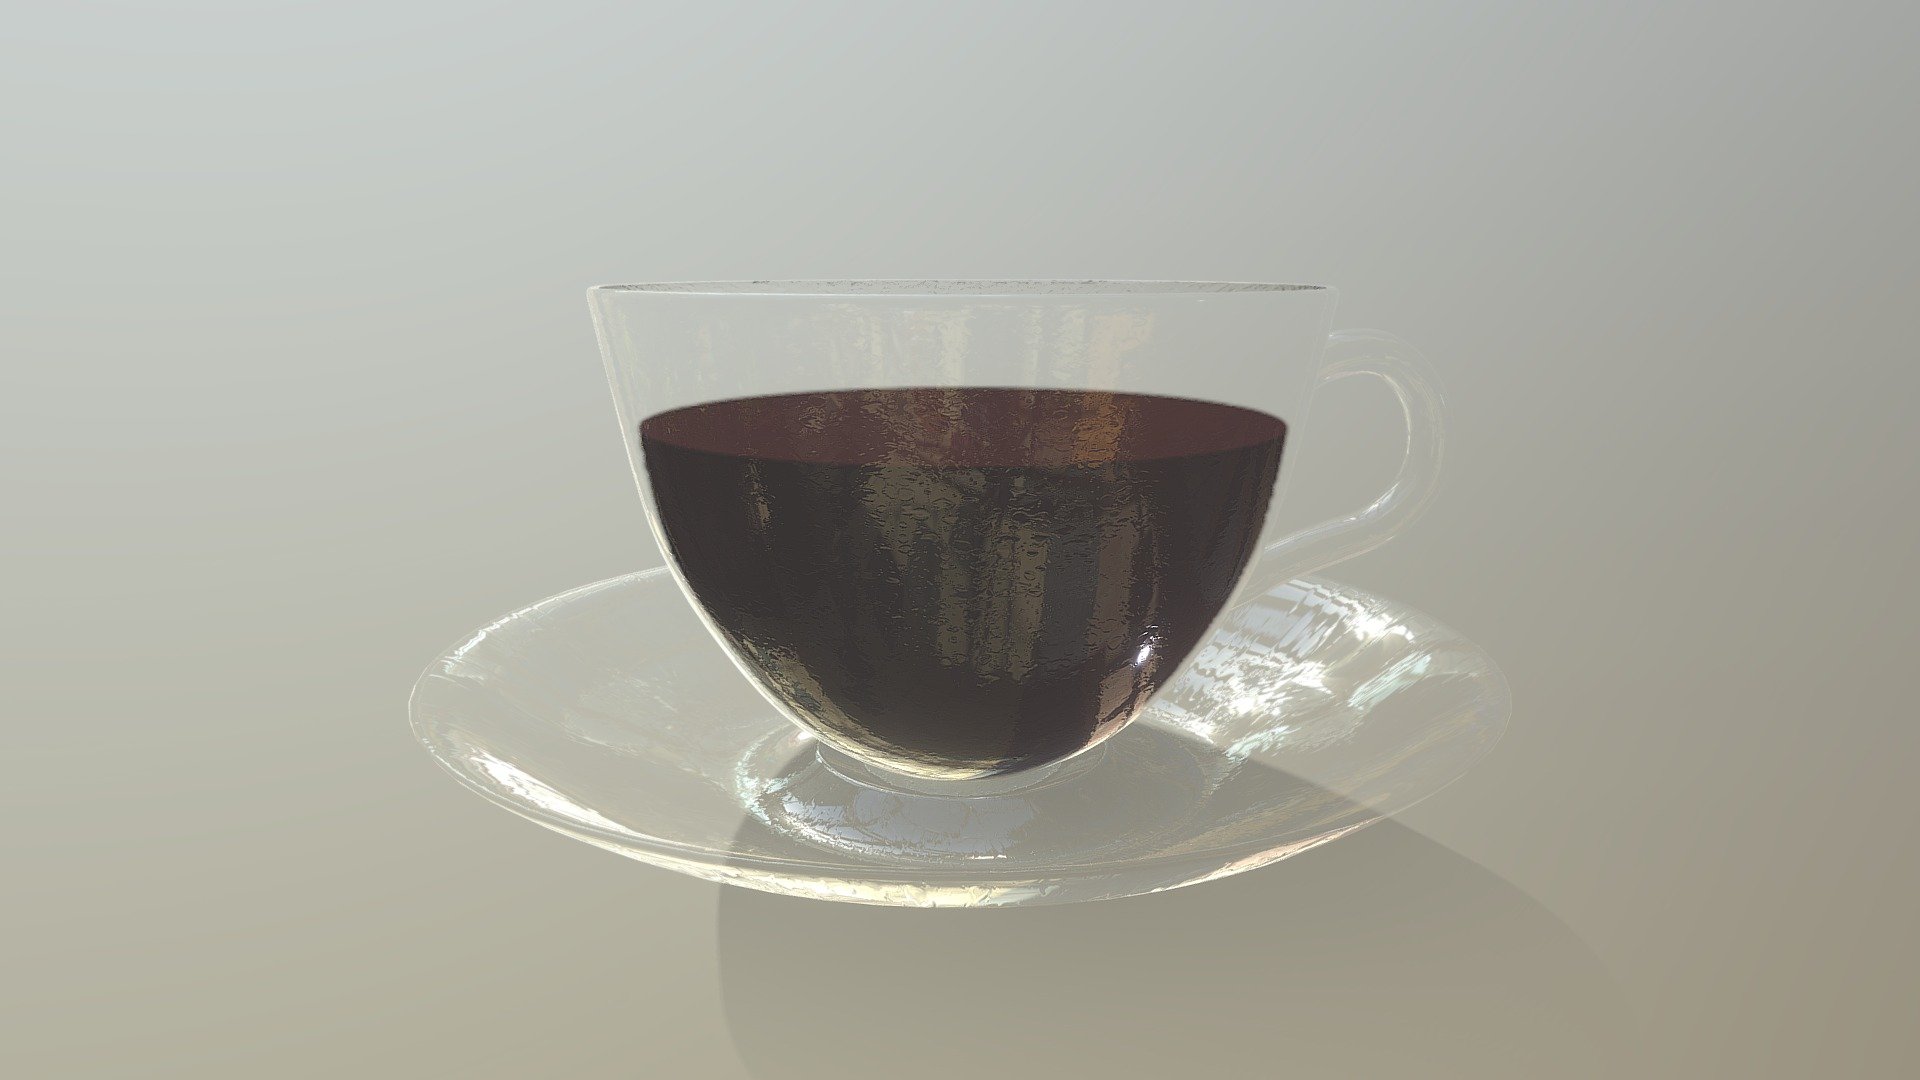 Blender beginner tutorial - How To Create A Coffee Mug Coffee In Blender 